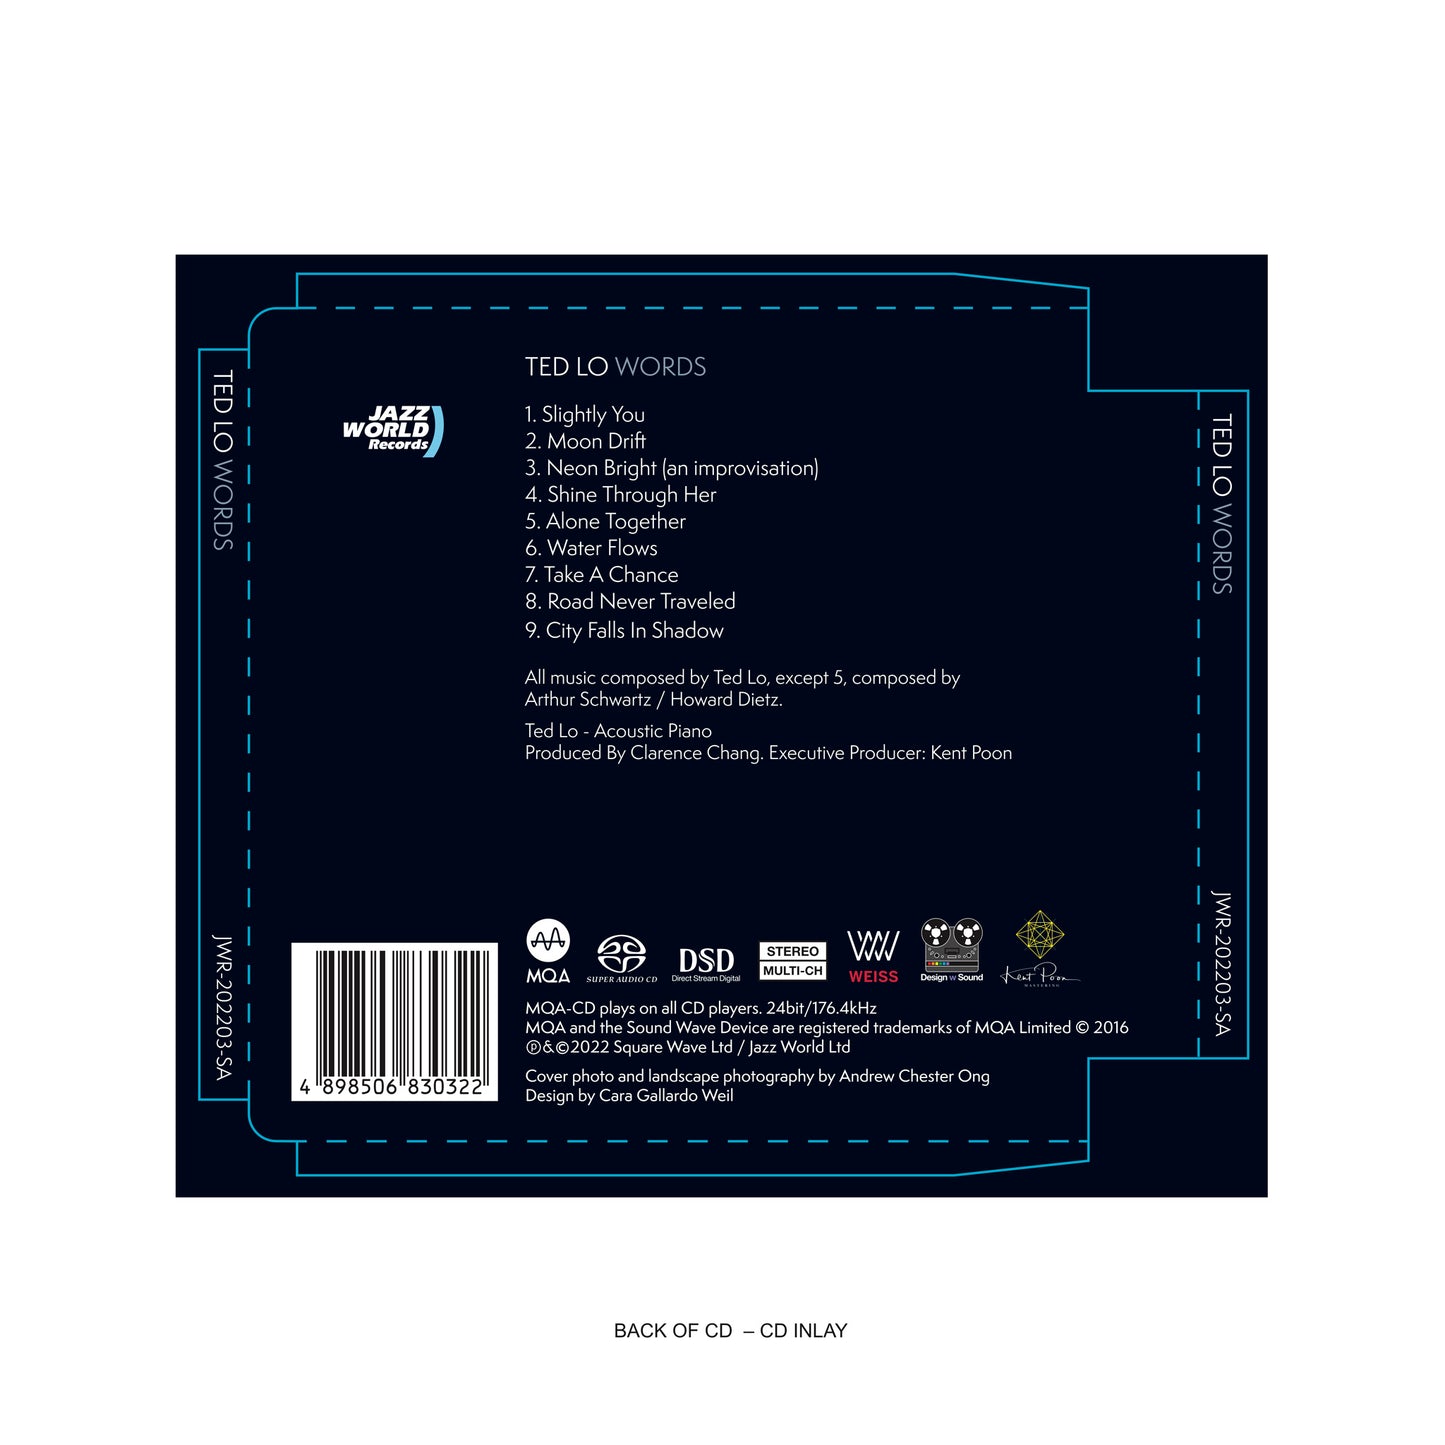 Words - Hybird SACD/CD